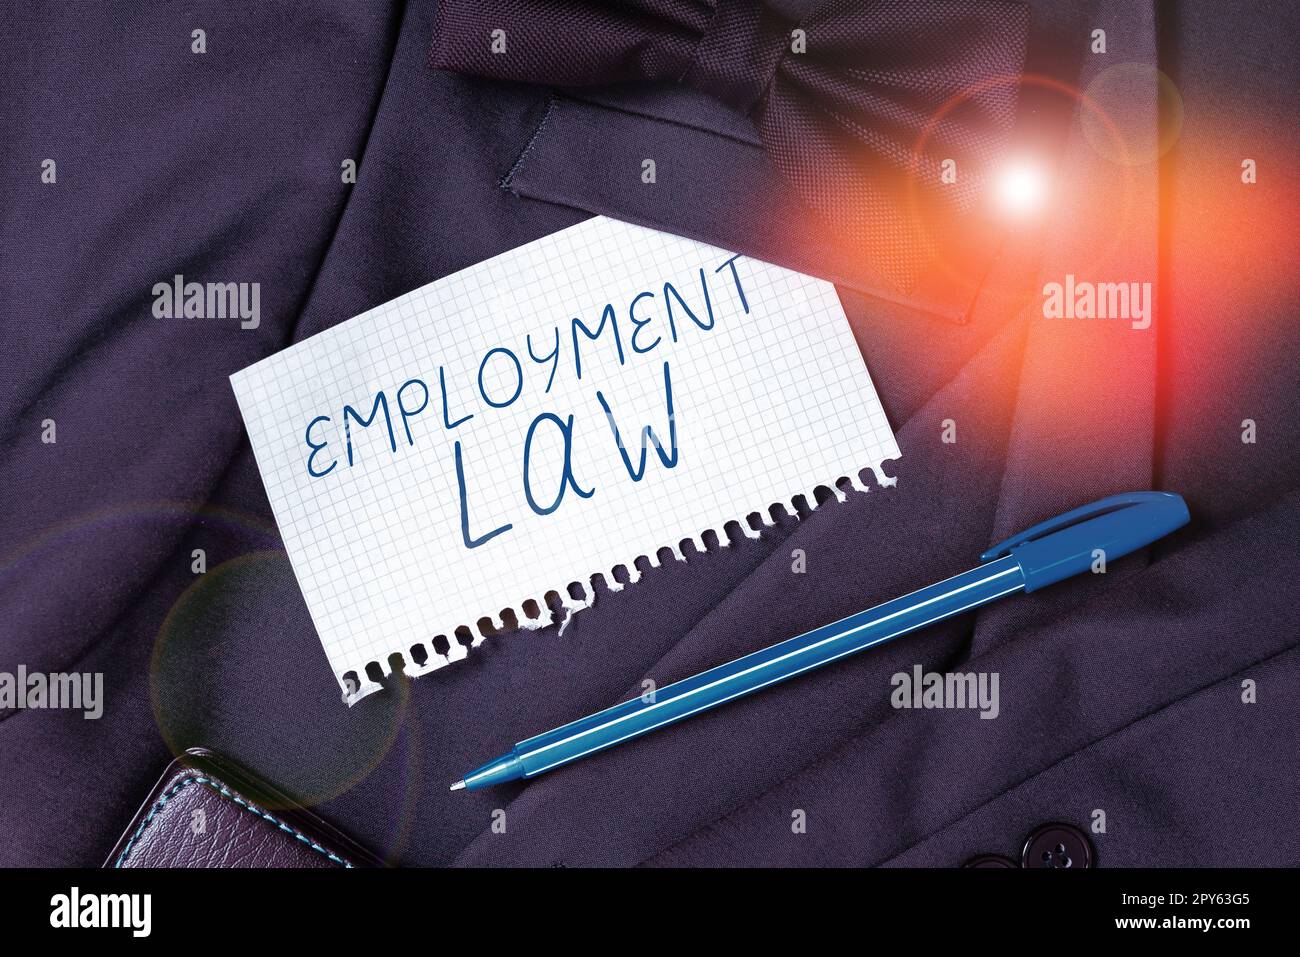 Affichage conceptuel droit de l'emploi. La vitrine commerciale traite des droits et devoirs juridiques des employeurs et des employés Banque D'Images